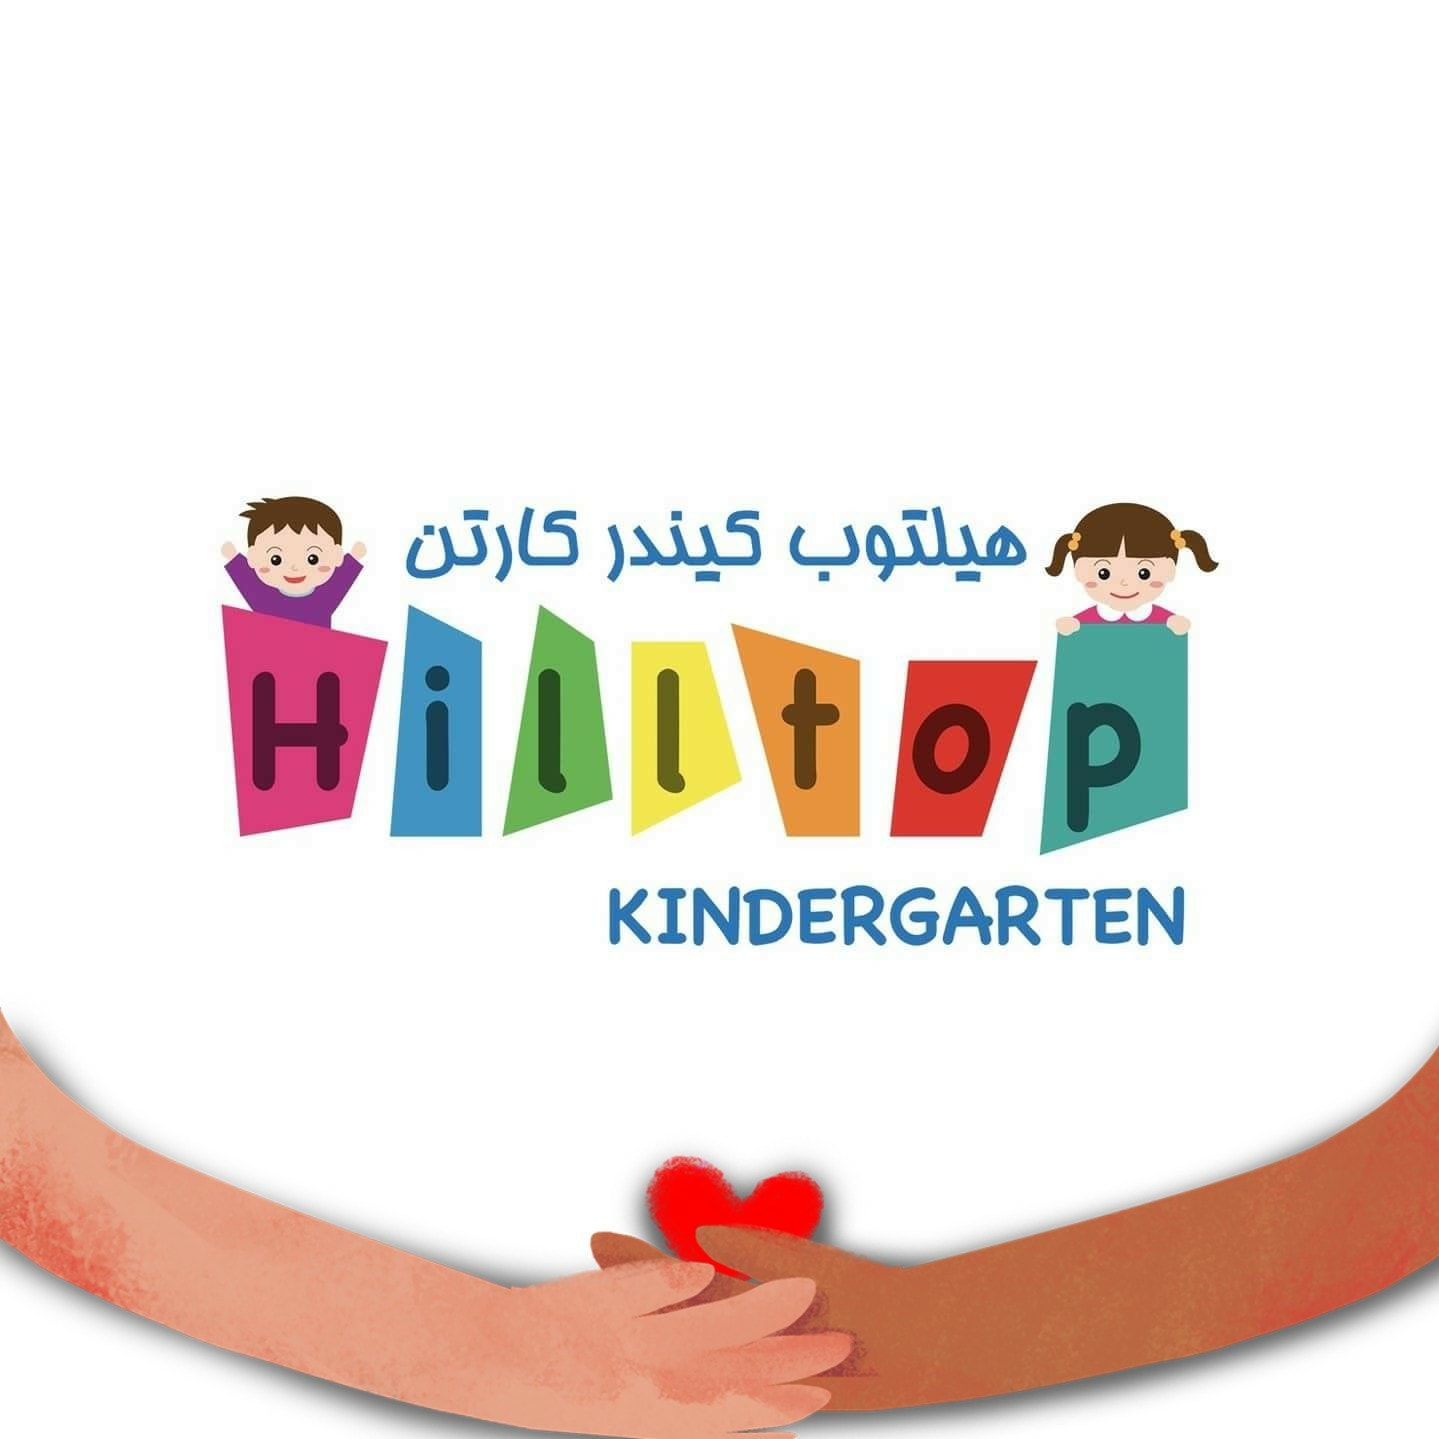 Nursery logo Hilltop Kindergarten